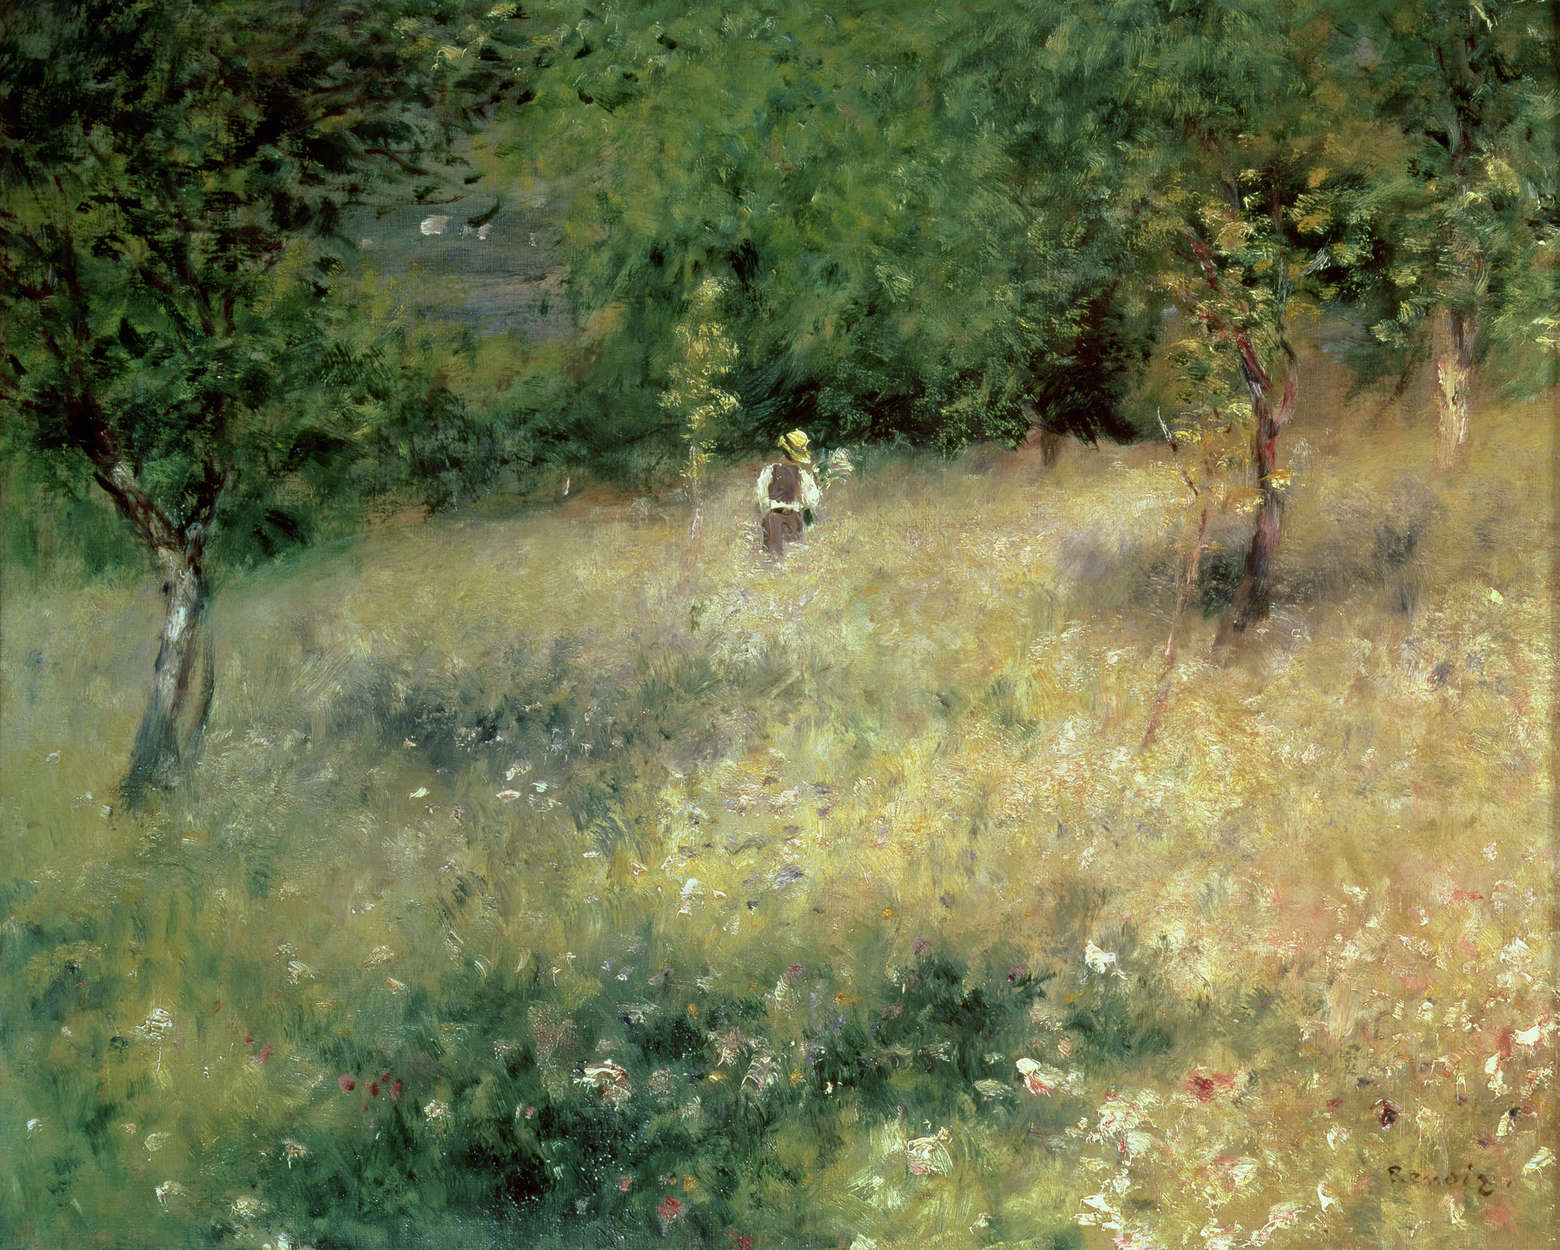             Mural "Primavera en Chatou" de Pierre Auguste Renoir
        